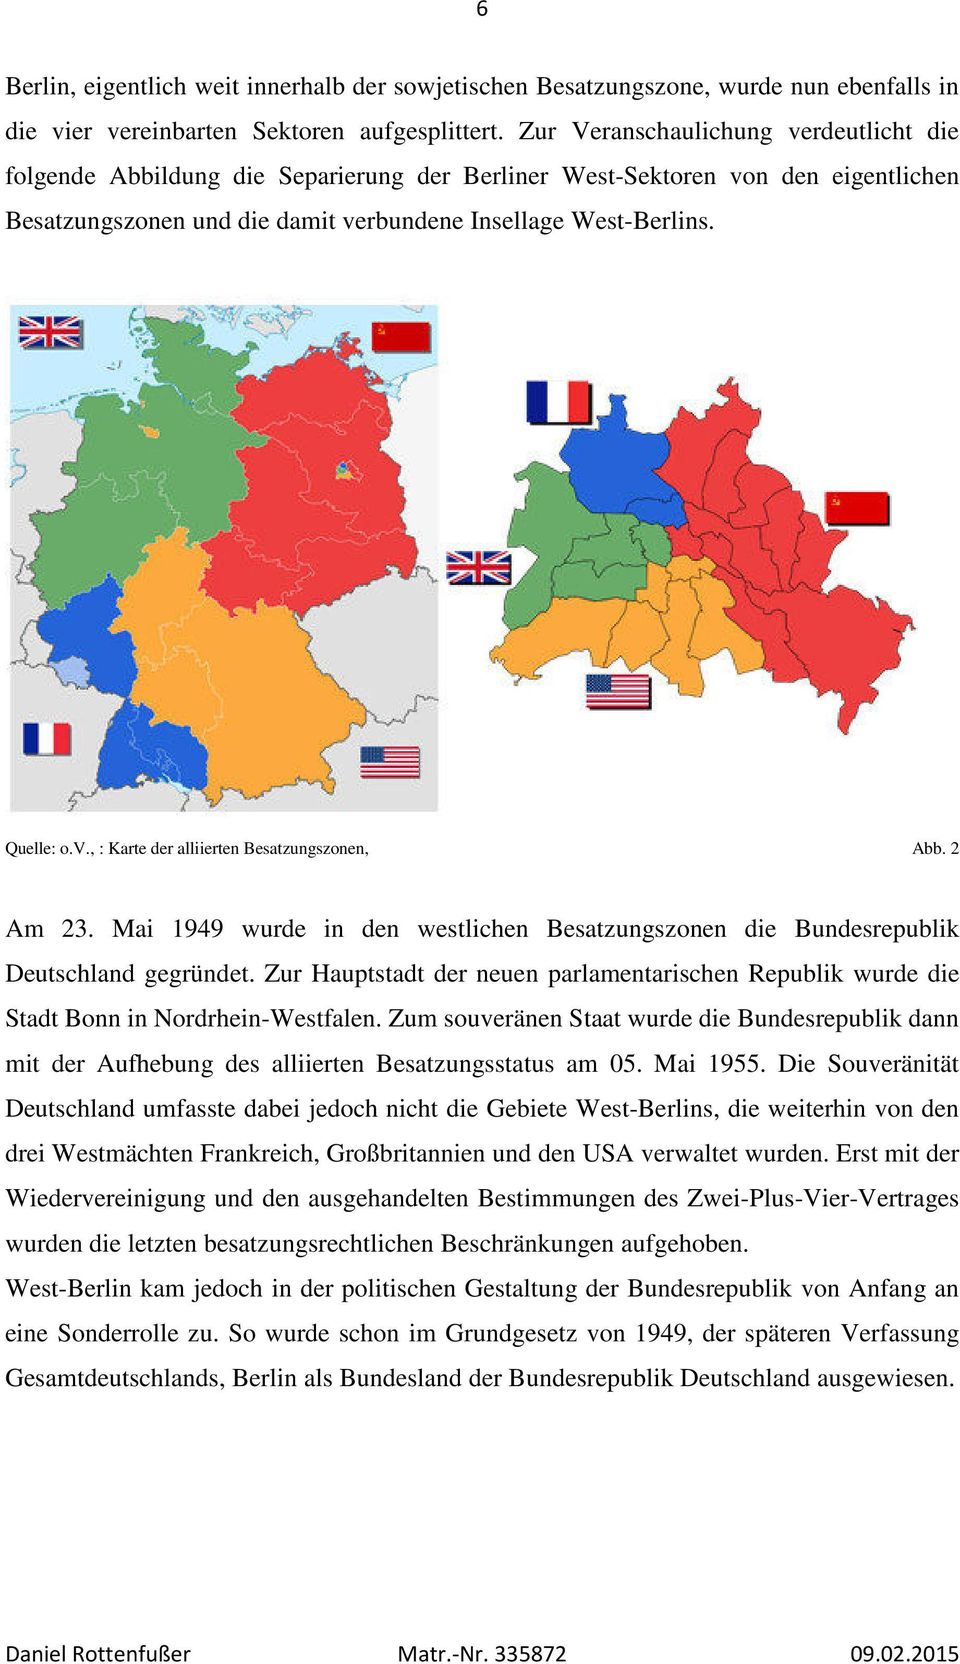 2 Am 23. Mai 1949 wurde in den westlichen Besatzungszonen die Bundesrepublik Deutschland gegründet. Zur Hauptstadt der neuen parlamentarischen Republik wurde die Stadt Bonn in Nordrhein-Westfalen.